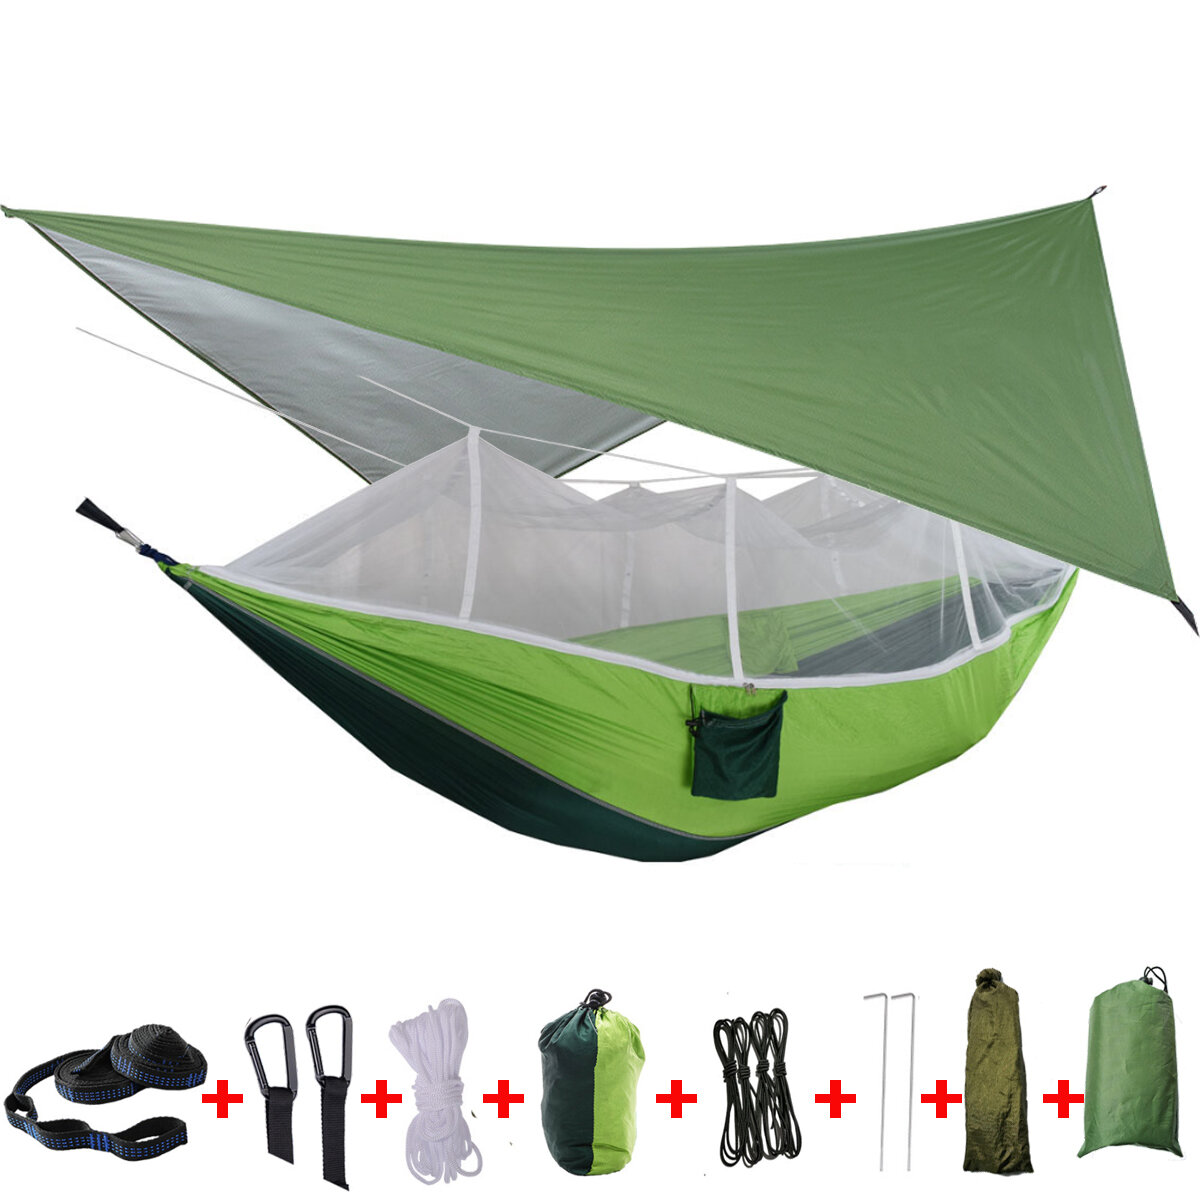 IPRee® 2人用キャンプハンモックテント、蚊帳、レインフライタープカバー、アウトドア旅行用のダブルハンギングベッド